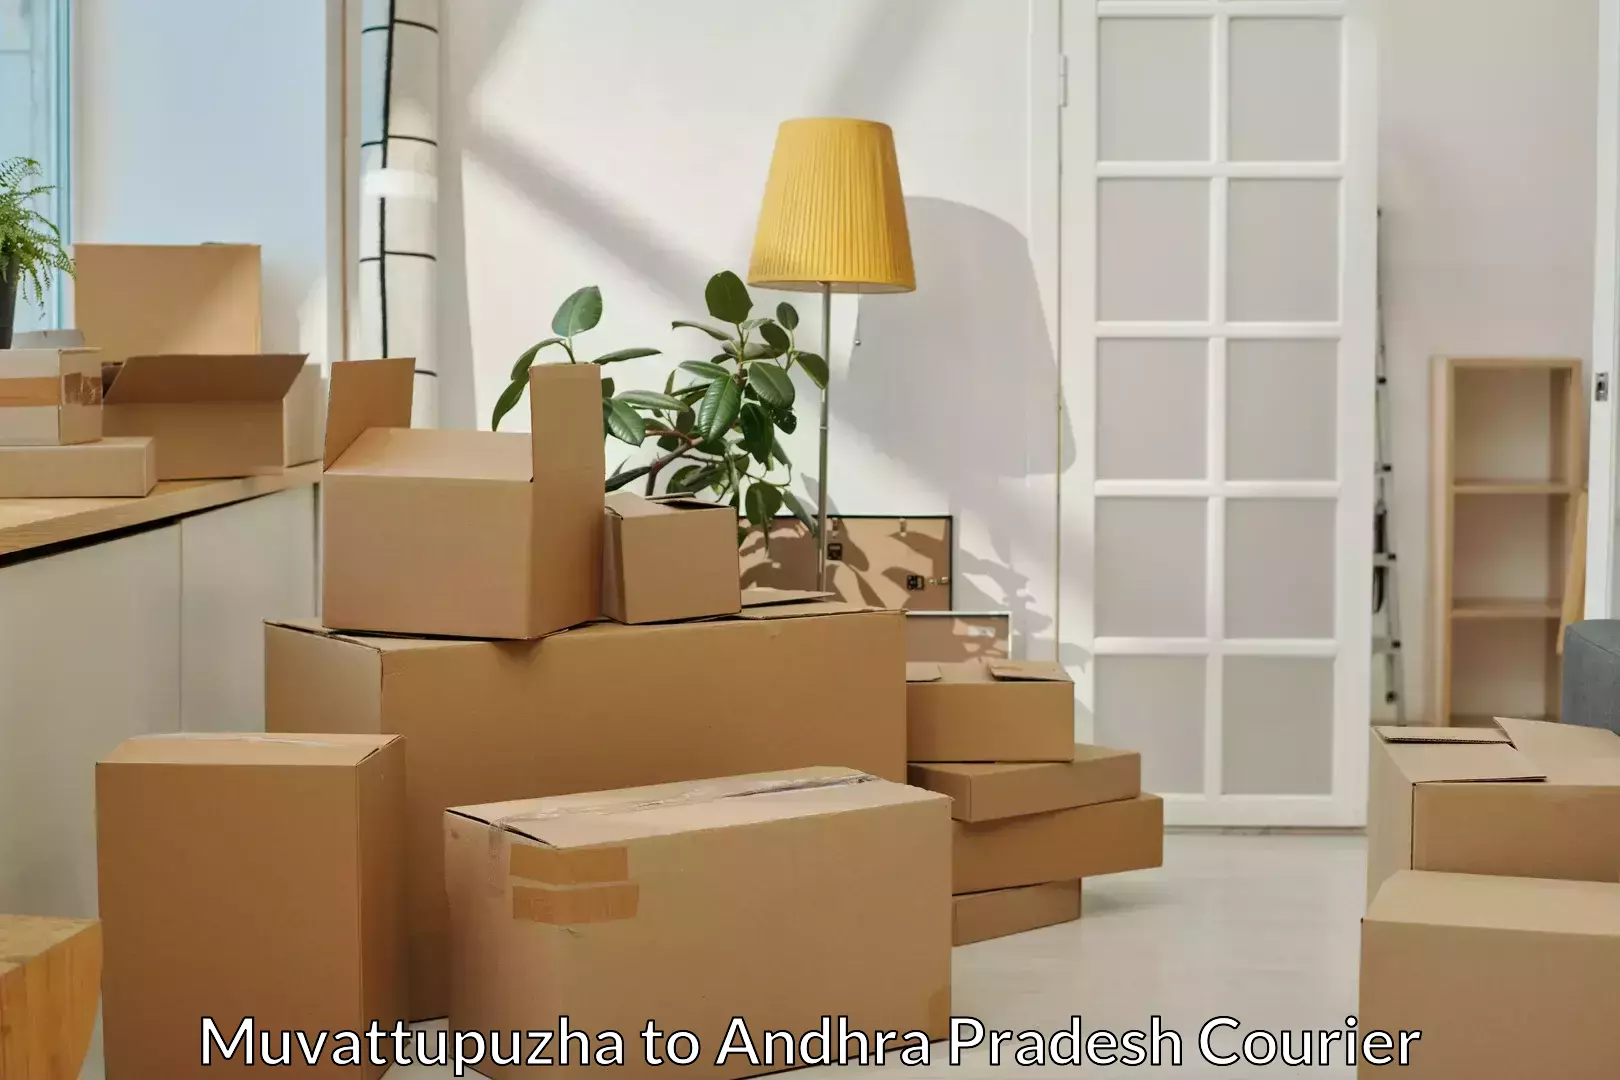 Furniture moving experts Muvattupuzha to Puttur Tirupati